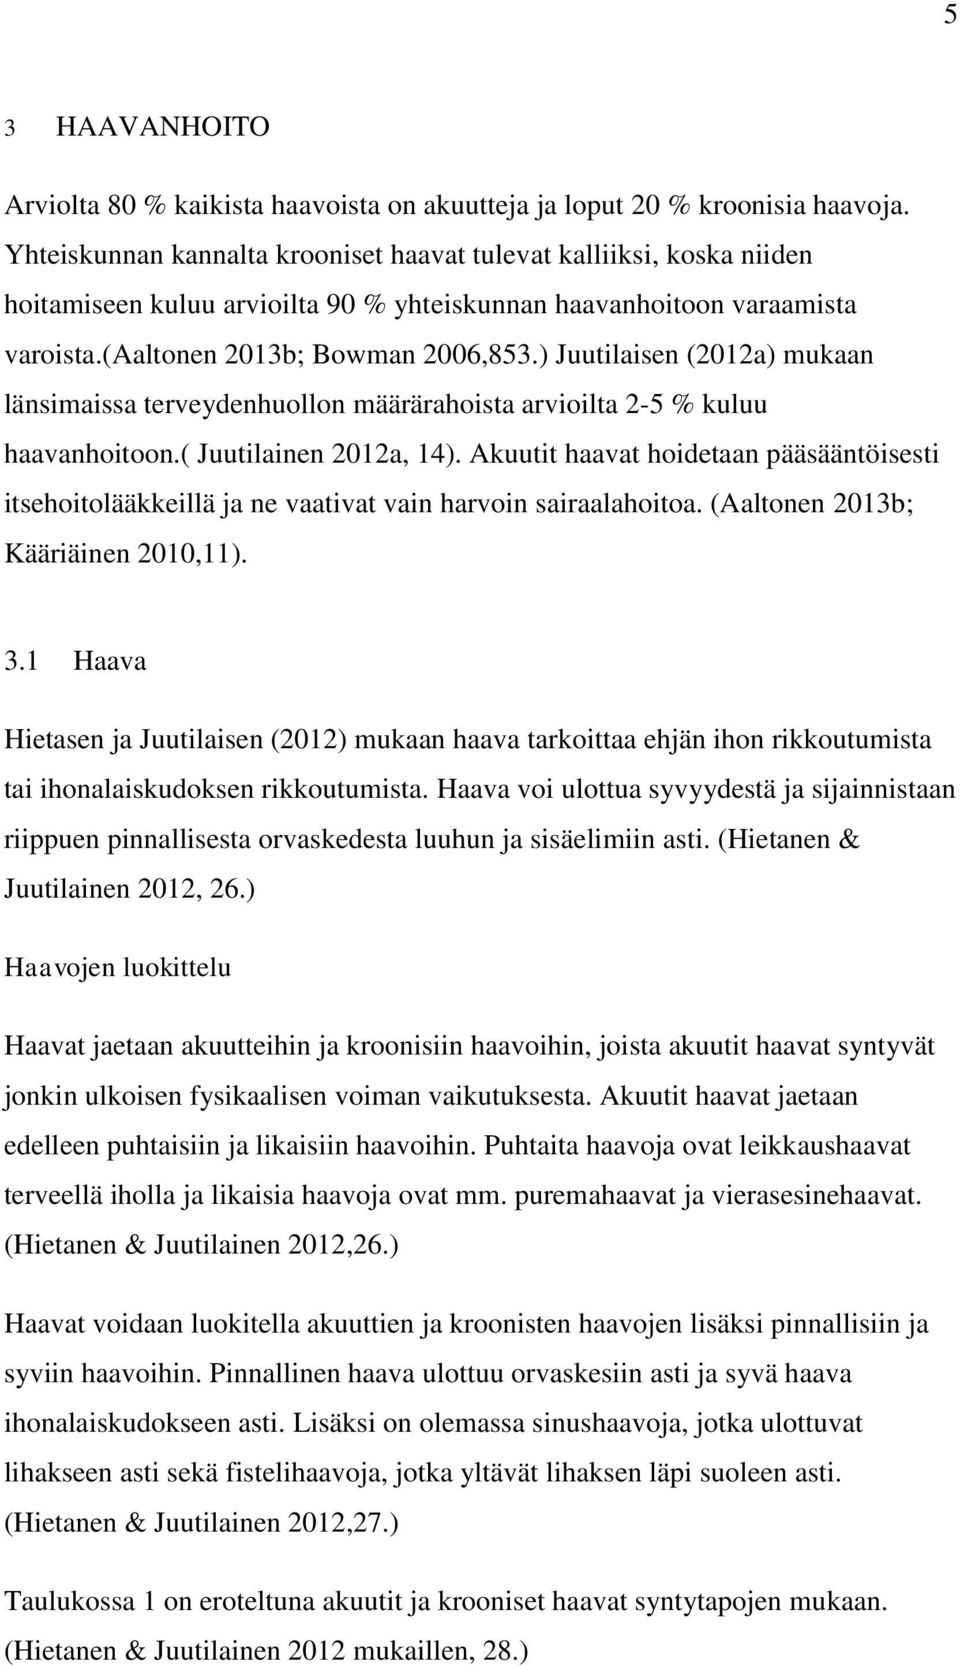 ) Juutilaisen (2012a) mukaan länsimaissa terveydenhuollon määrärahoista arvioilta 2-5 % kuluu haavanhoitoon.( Juutilainen 2012a, 14).